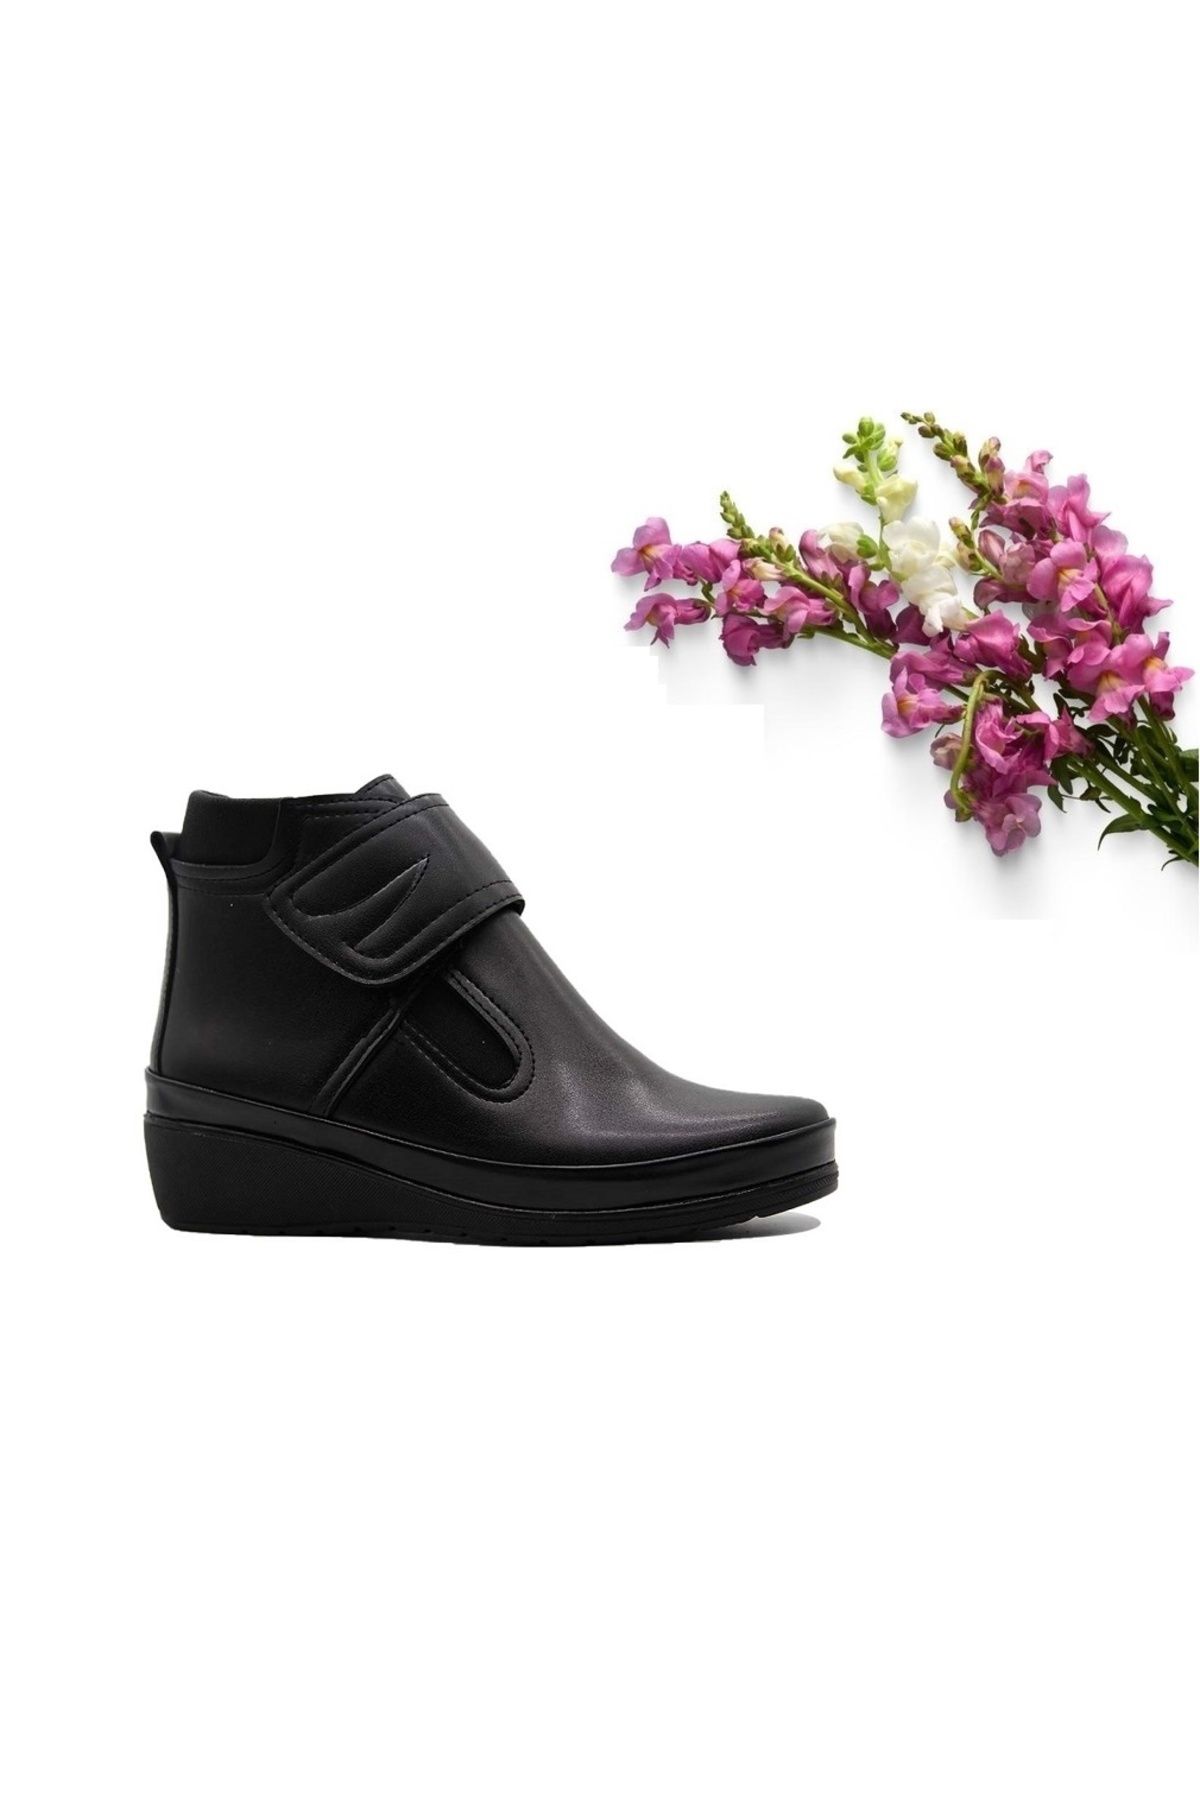 Ayzen Suya Dayanıklı Kadın Anne Siyah Renk Dolgu Taban Cırtlı Kışlık Yarım Bot Ayakkabı